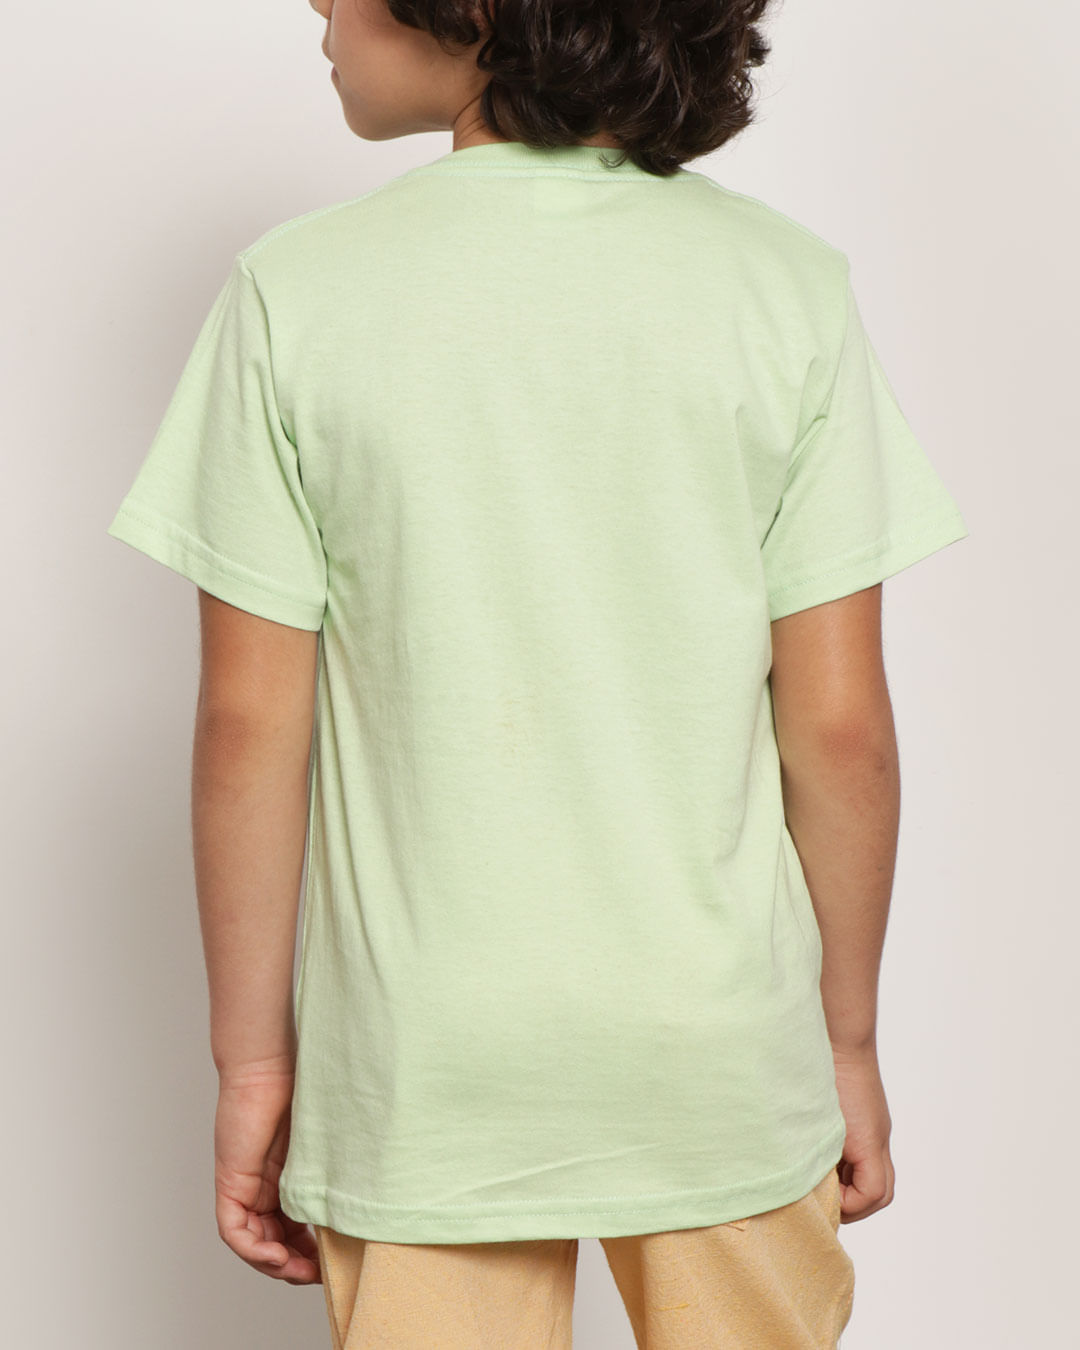 Camiseta-T37946-Mc-M-410-Retro---Verde-Claro